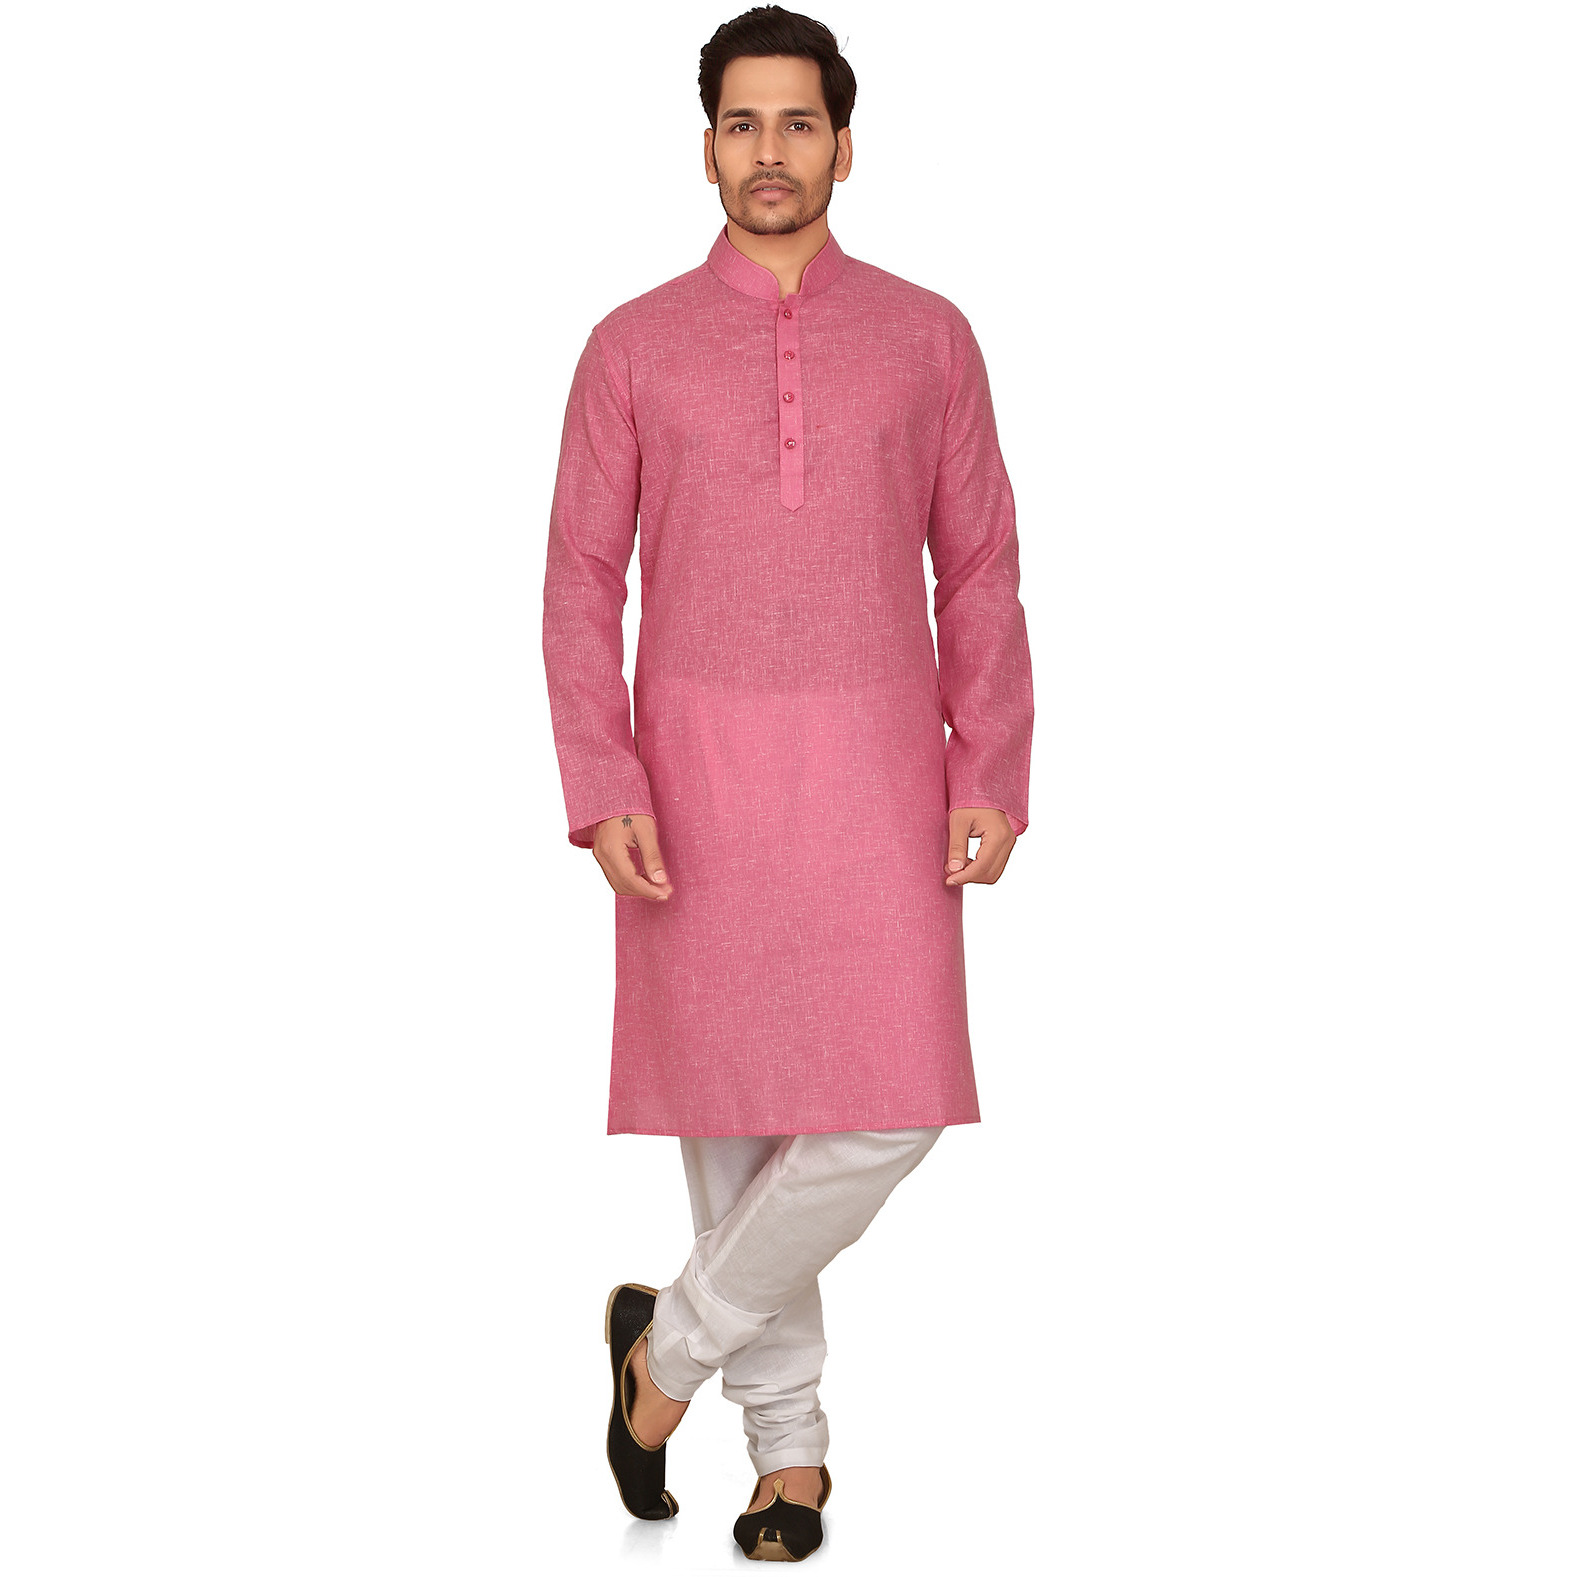 Garun Men's Pink Kurta and Pyjama Set (Size:L)